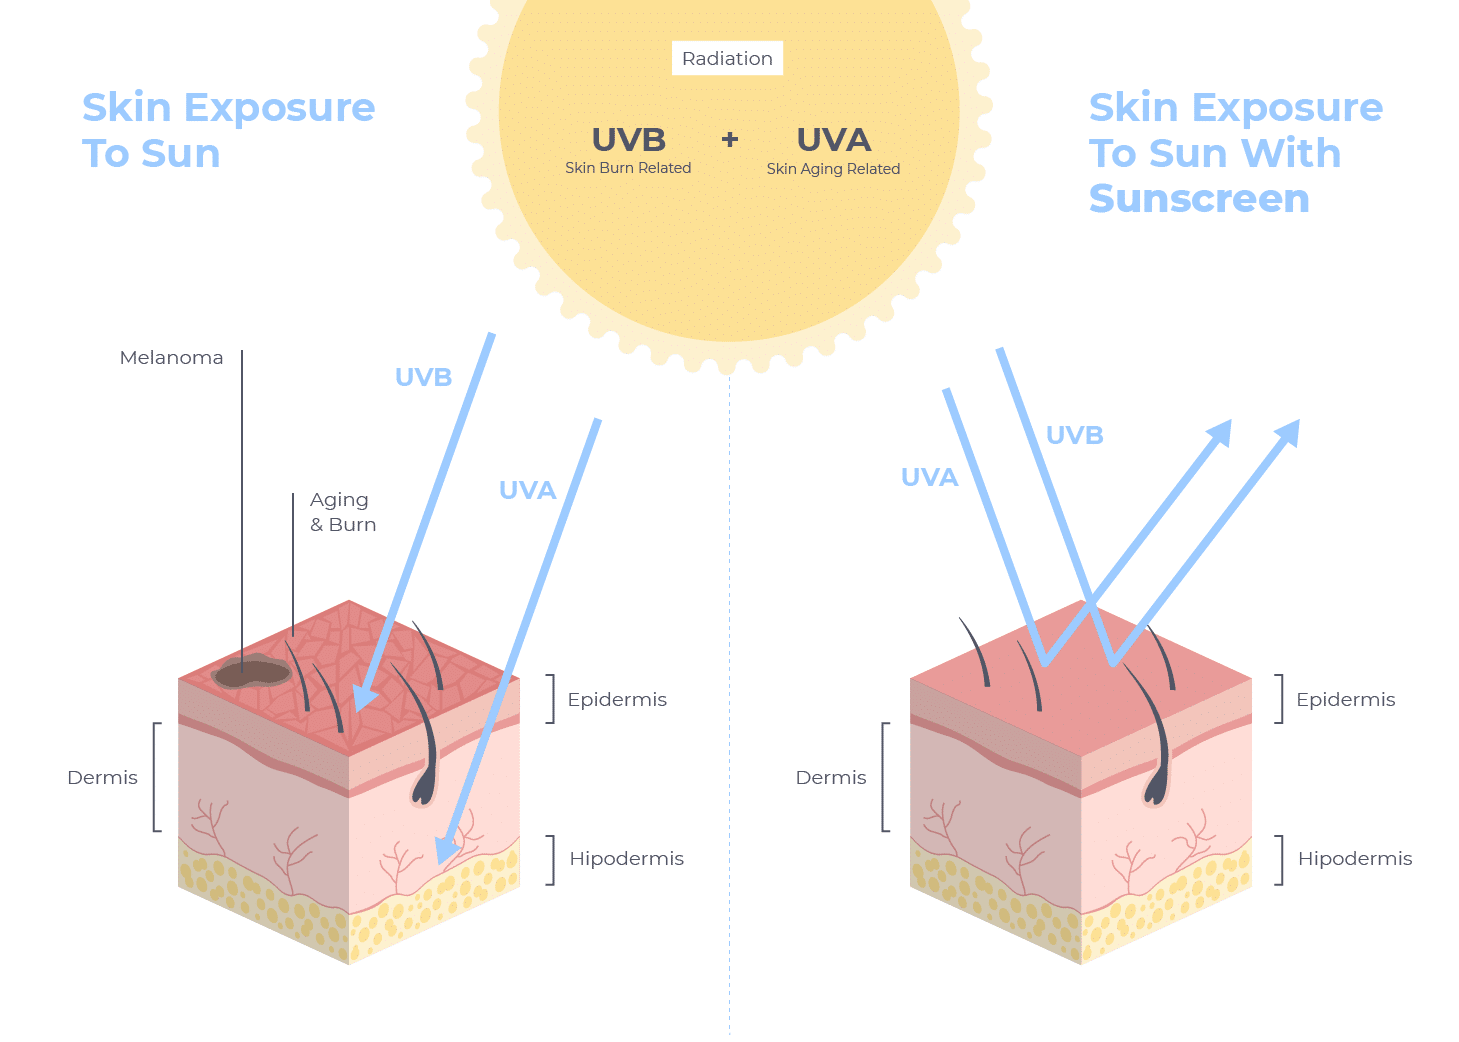 Skin exposure to sun